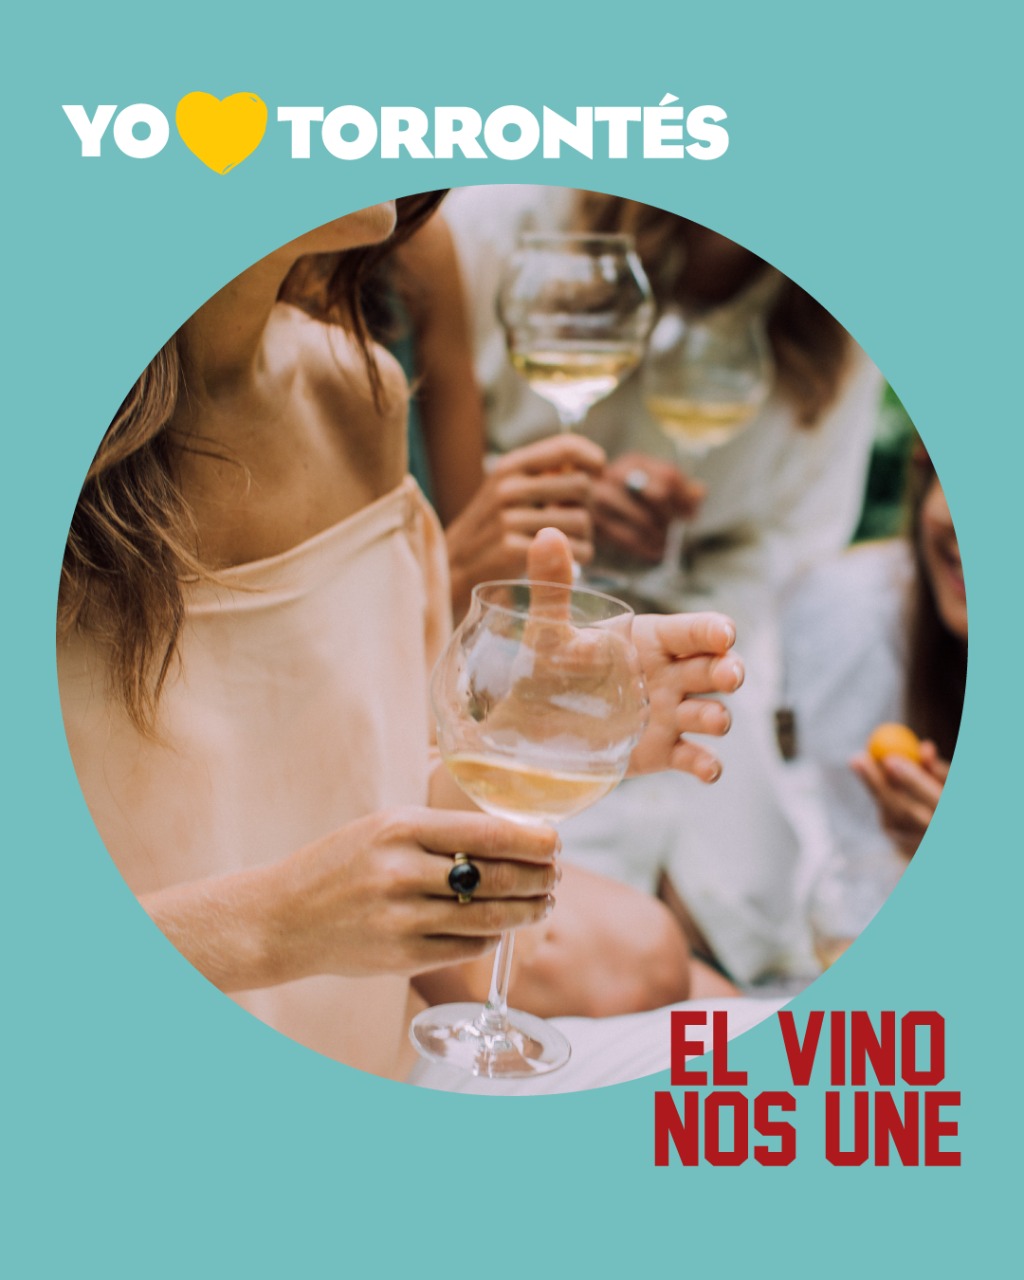 Semana del Torrontés: temporada de vinos primaverales y refrescantes|El magazine de vinos, gastronomía y lifestyle para las mentes inquietas